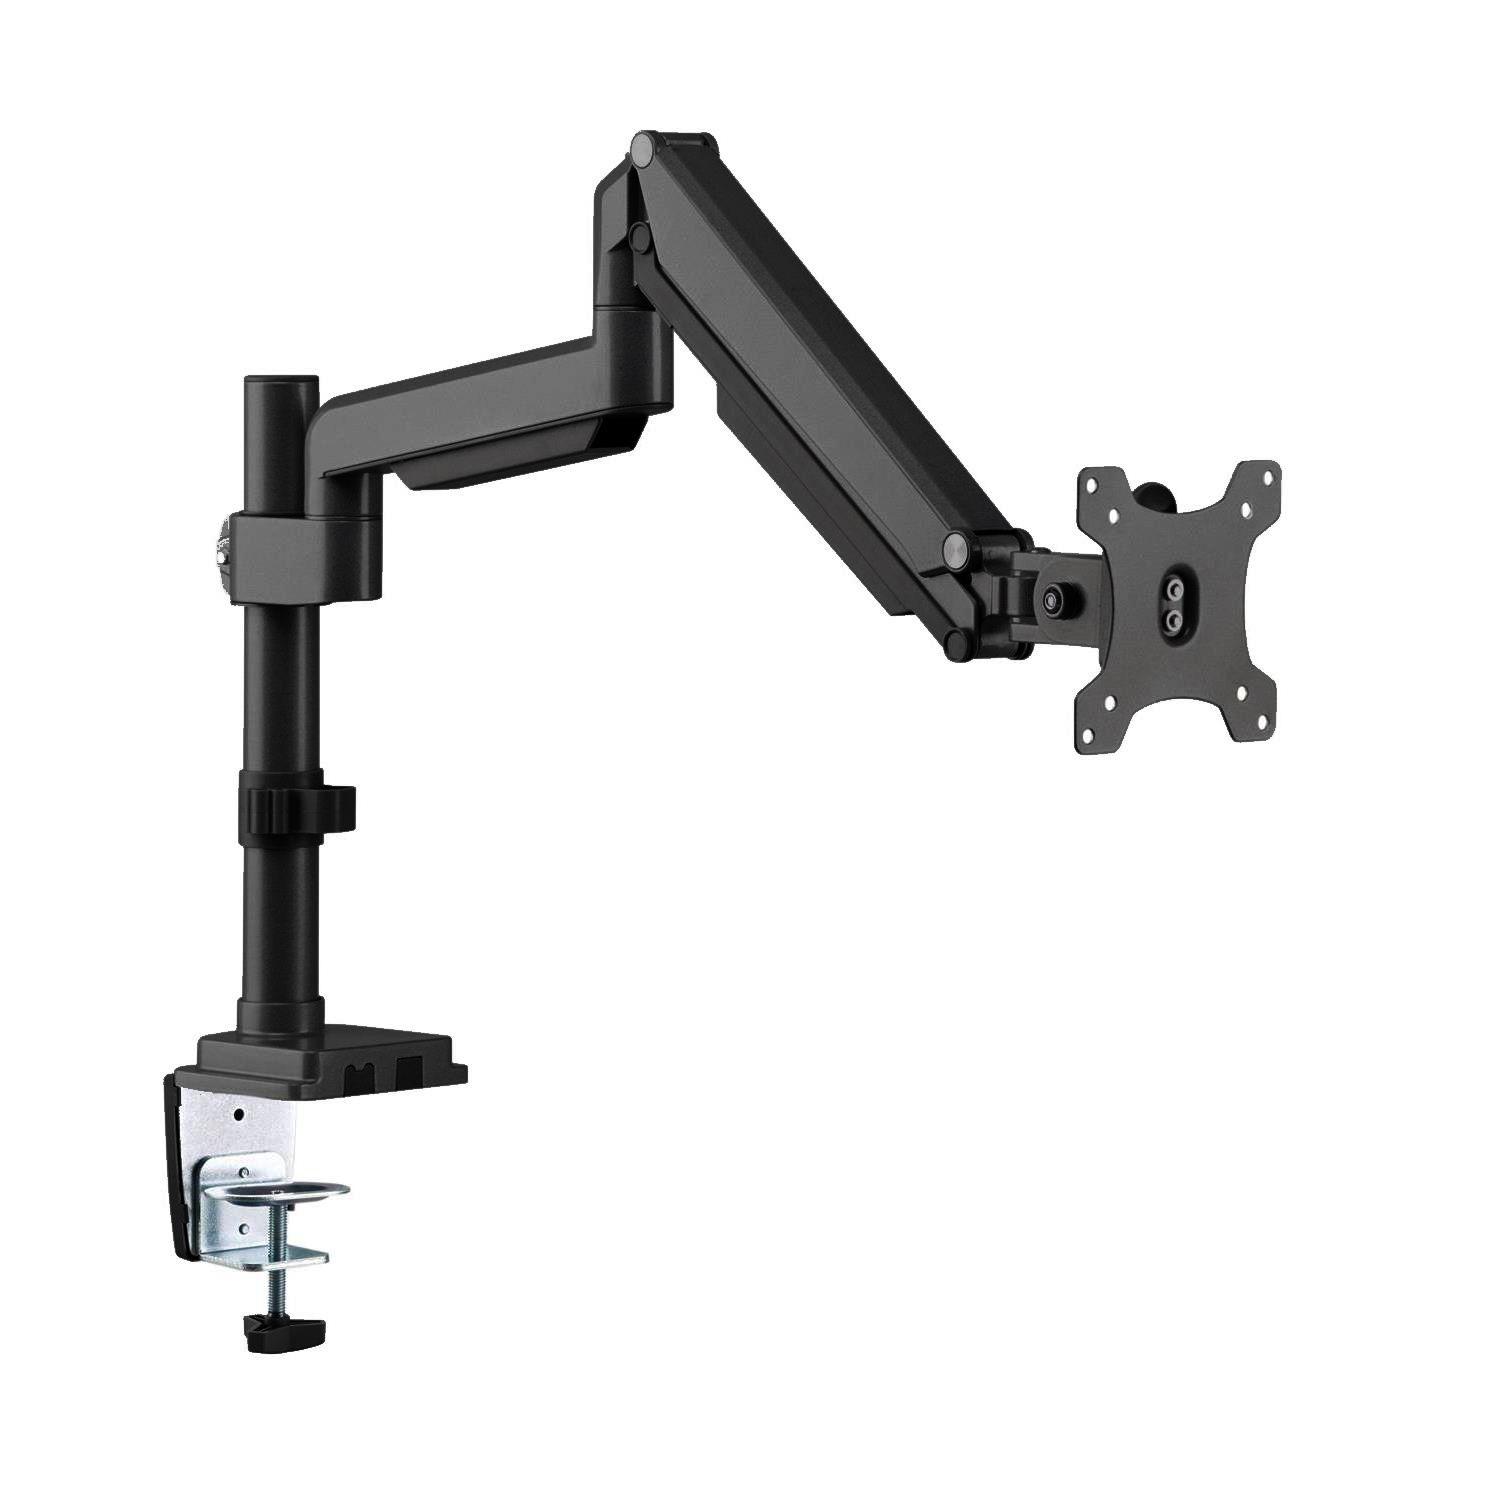 Ergo Office ER-407B Monitor Bracket Holder Desk Mount Adjustable Tilt Swivel 13" - 32" VESA Universal